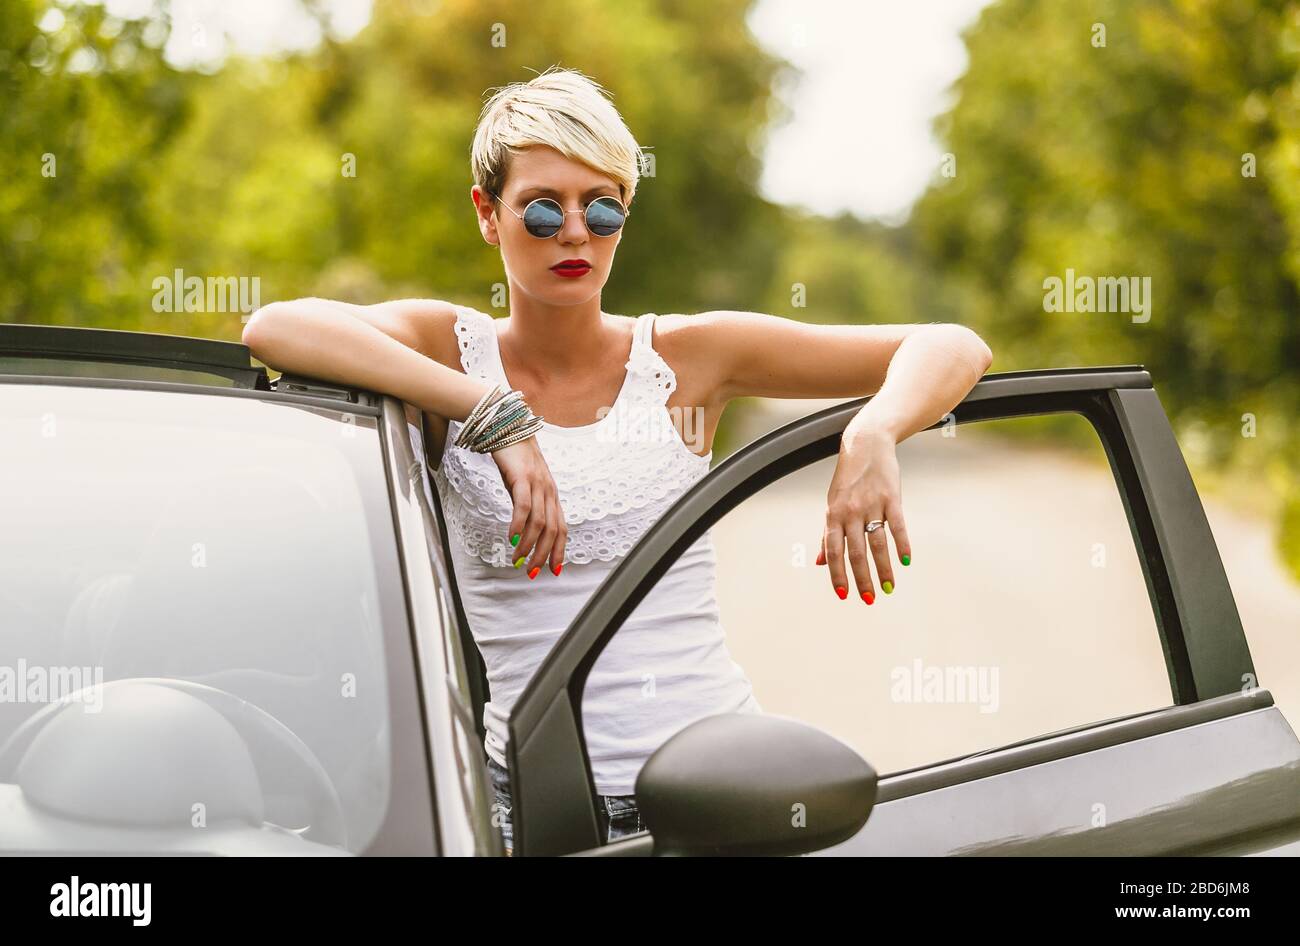 Giovane bionda attraente donna è pronta ad entrare nella sua auto. Sta aprendo la porta e rimanendo dietro di essa. Foto Stock